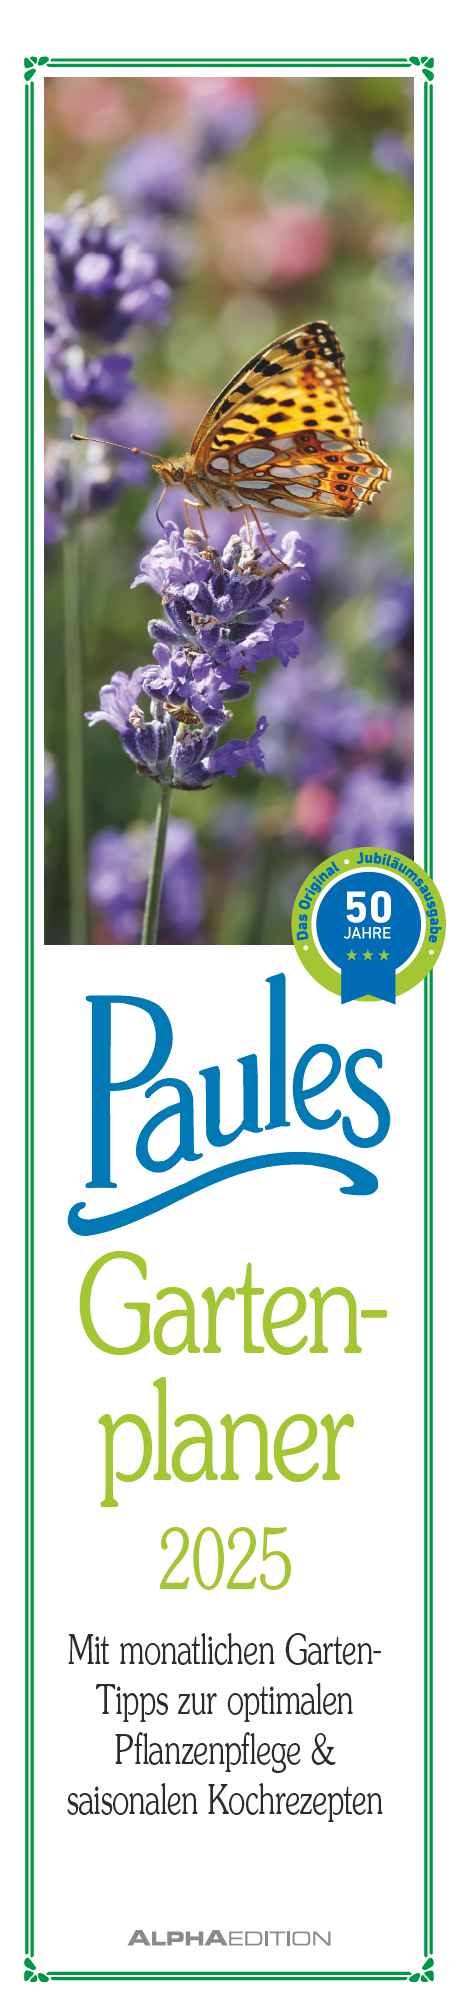 Alpha Edition - Paules Gartenplaner 2025, 11,3x49,5cm, Streifenkalender mit einer Spalte für Termine, viele Tipps und Informationen rund um den Garten und deutsches Kalendarium